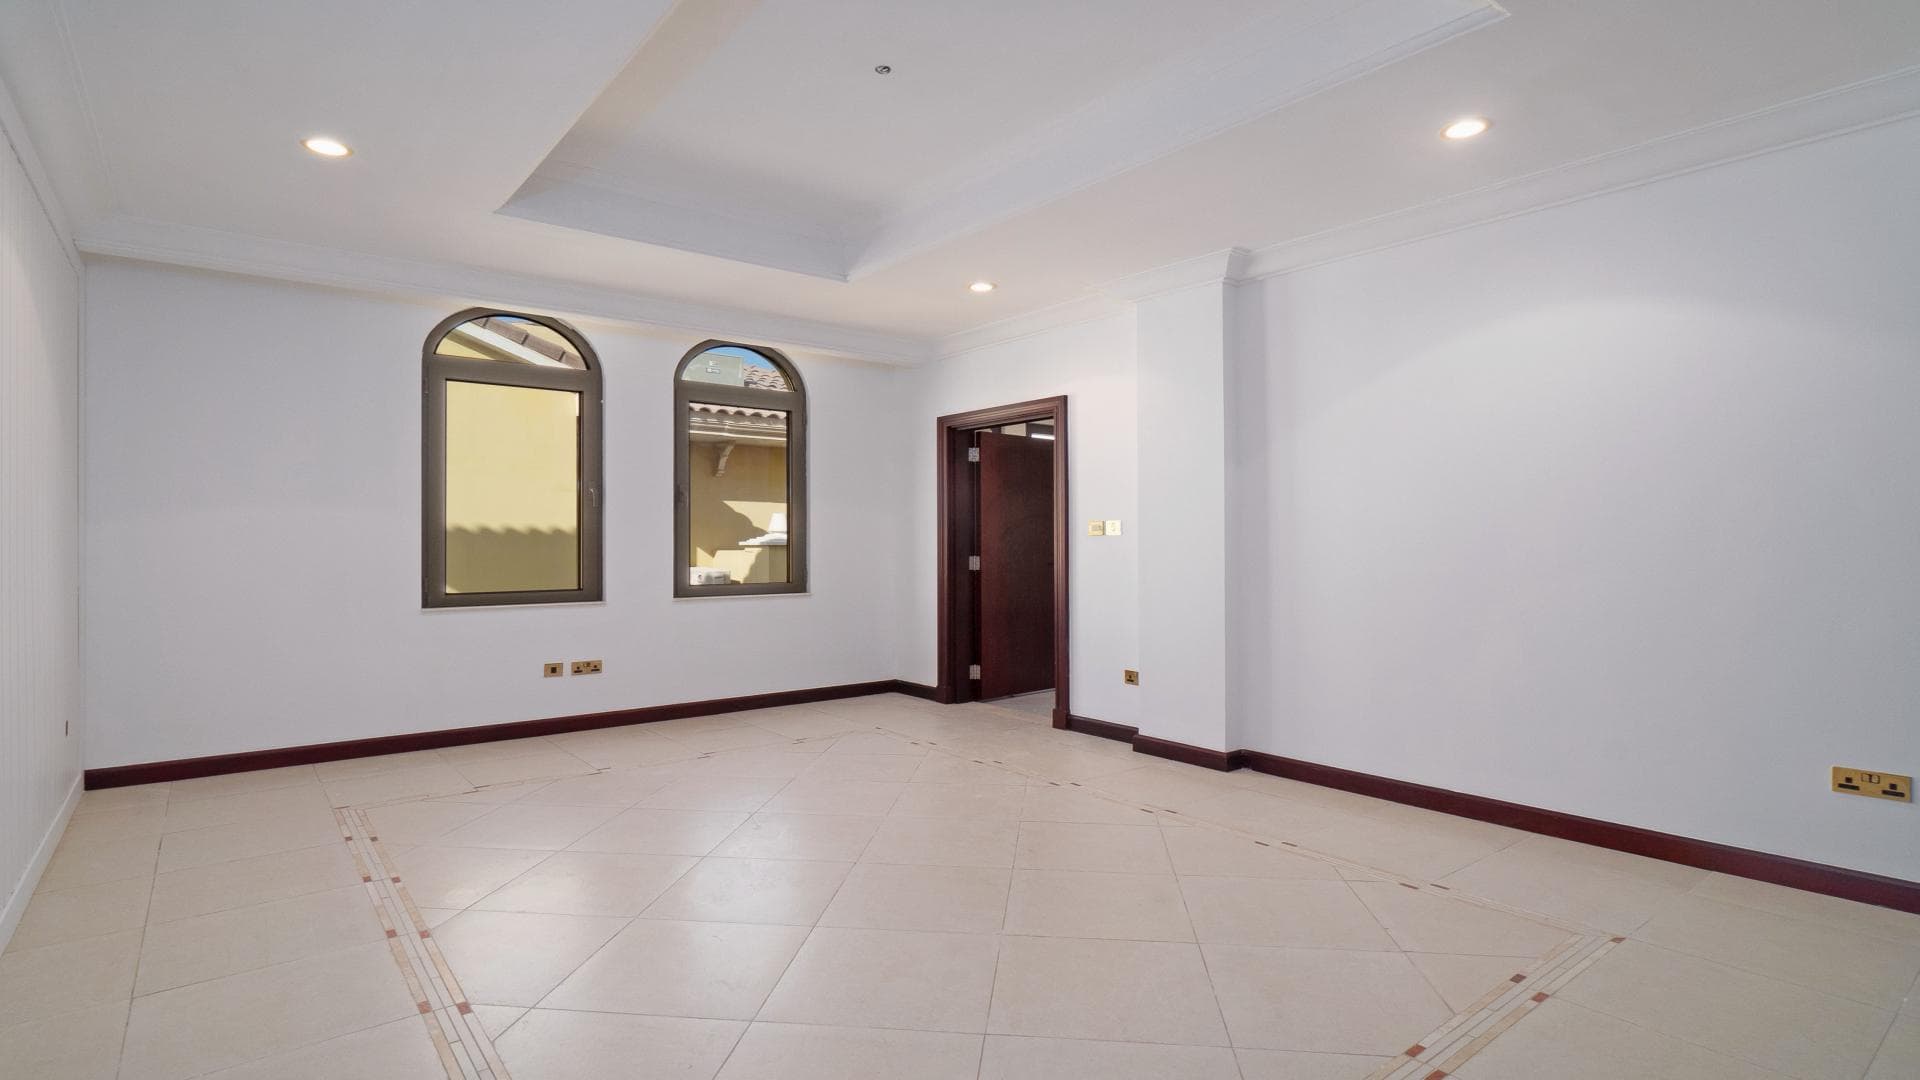 5 Bedroom Villa For Rent Mughal Lp36657 2d37a8073d18fe0.jpg